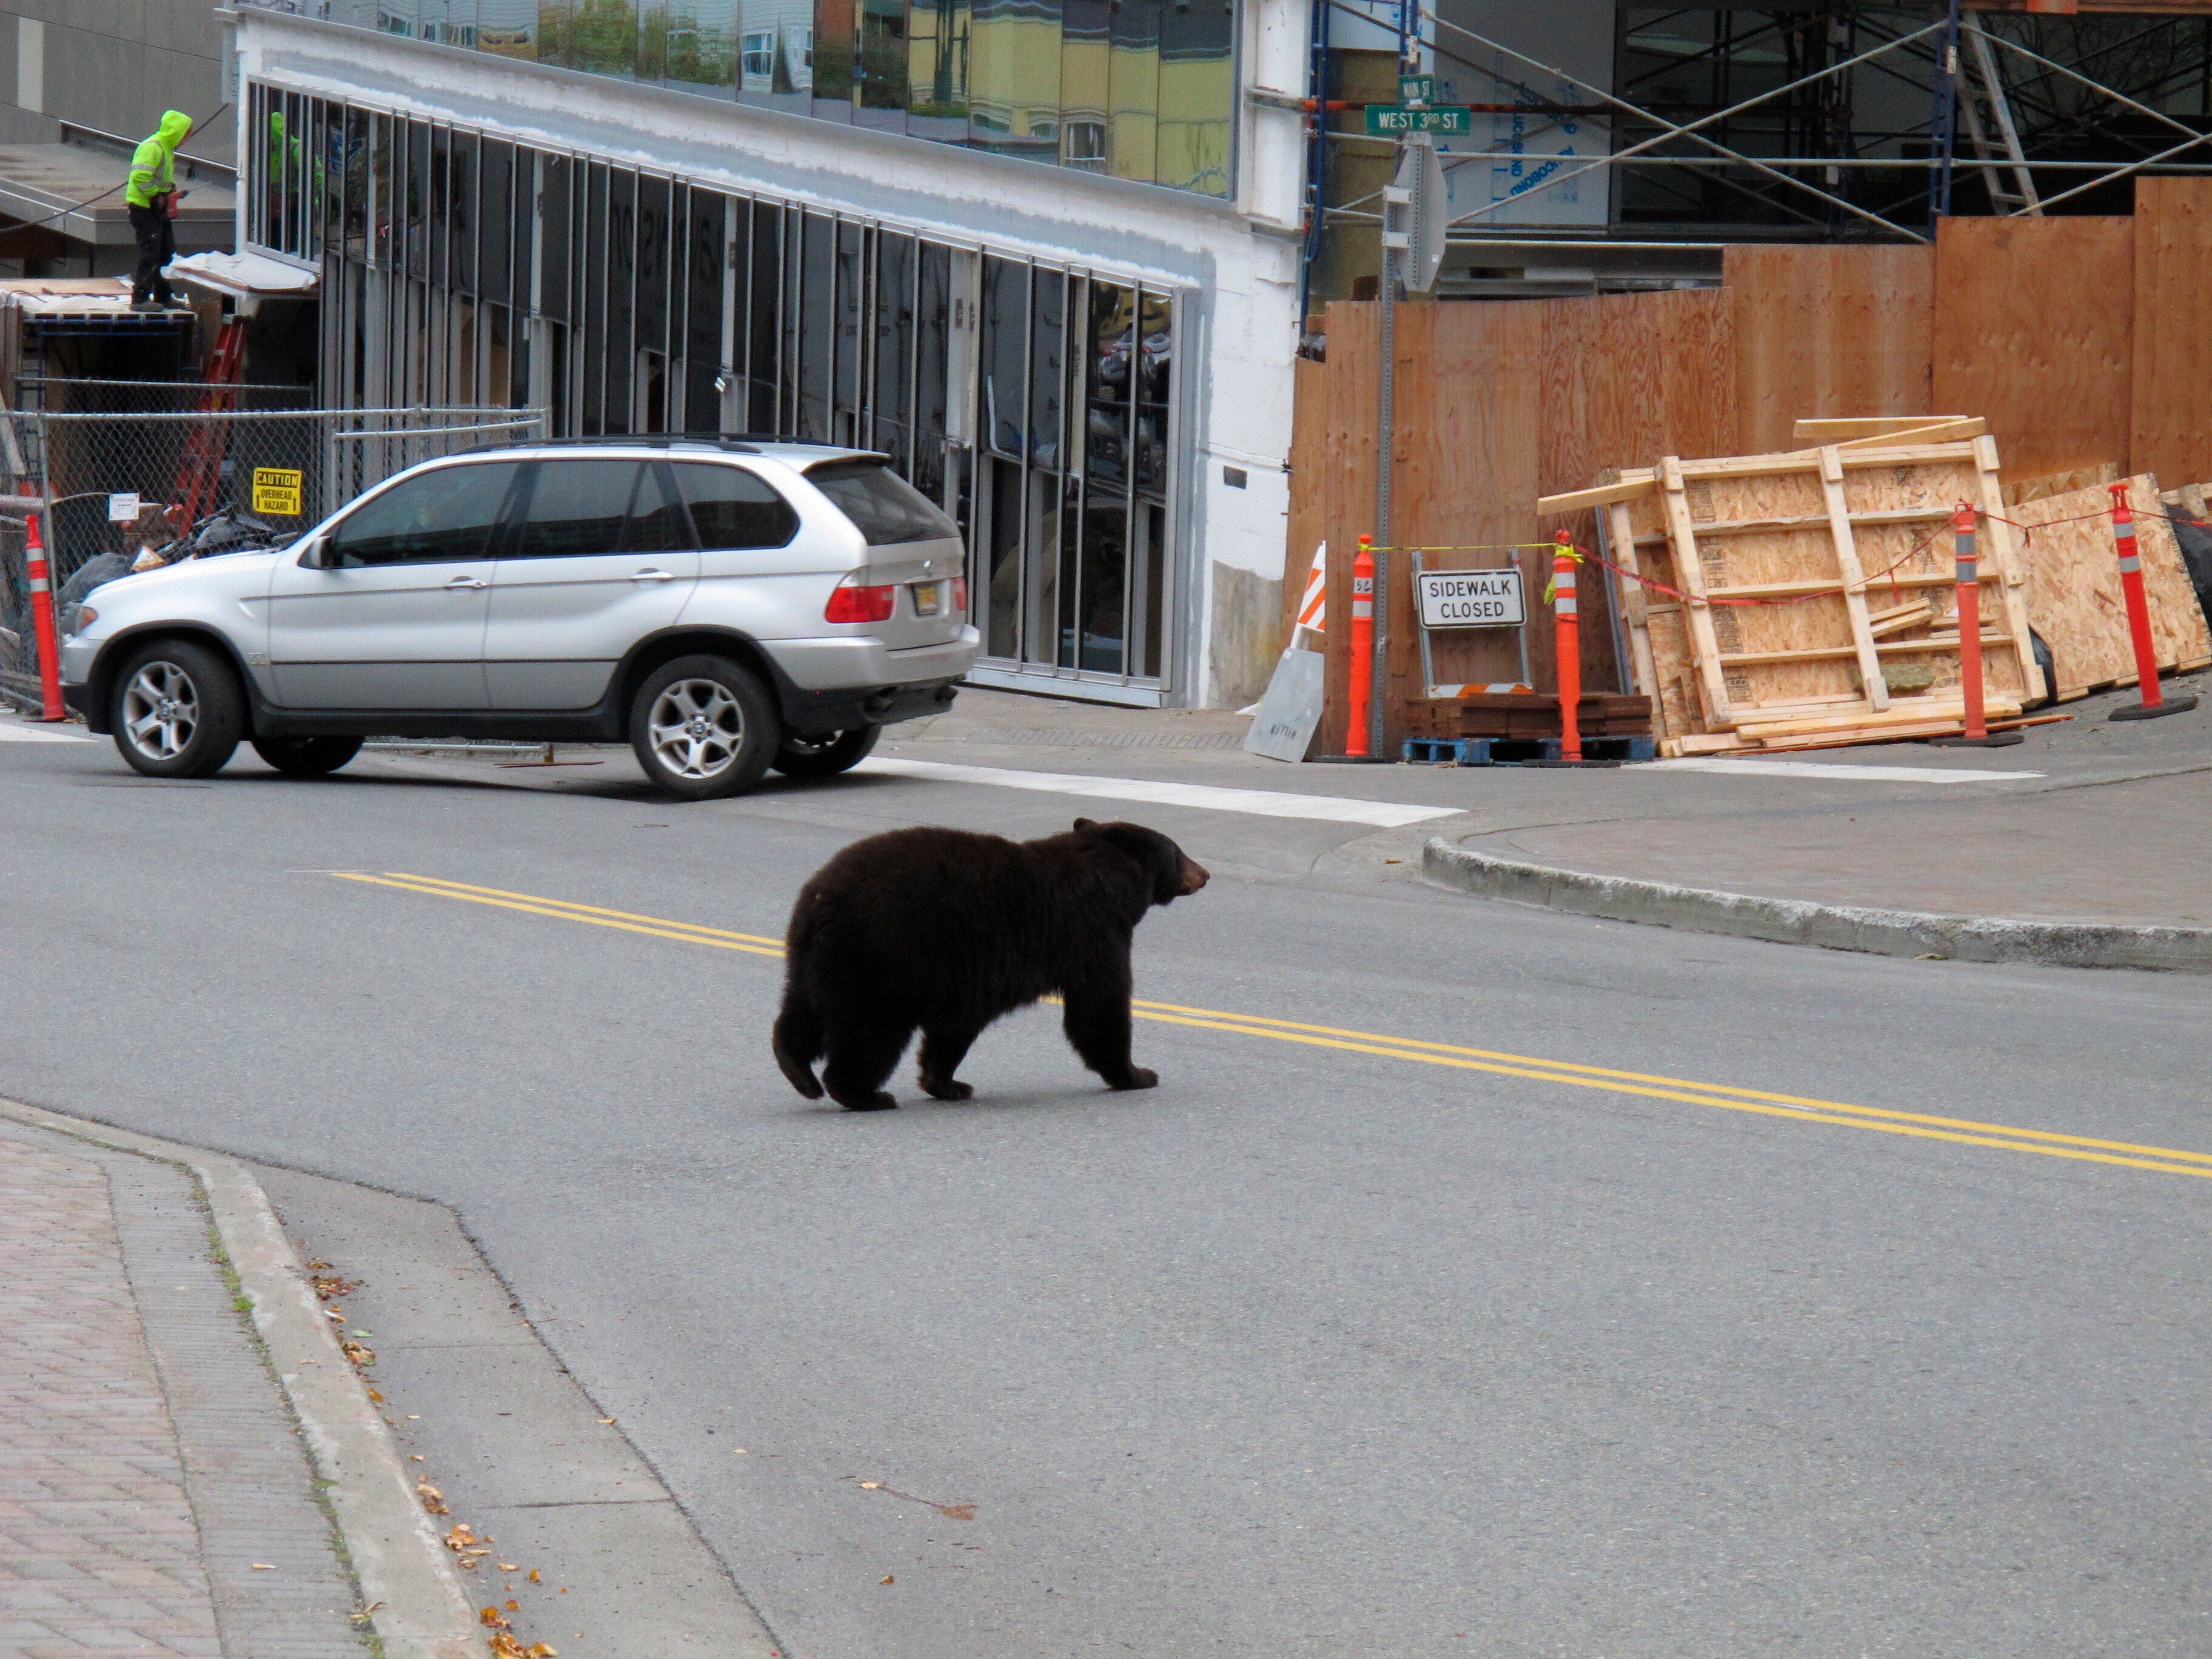 Juneau Bears-Garbage